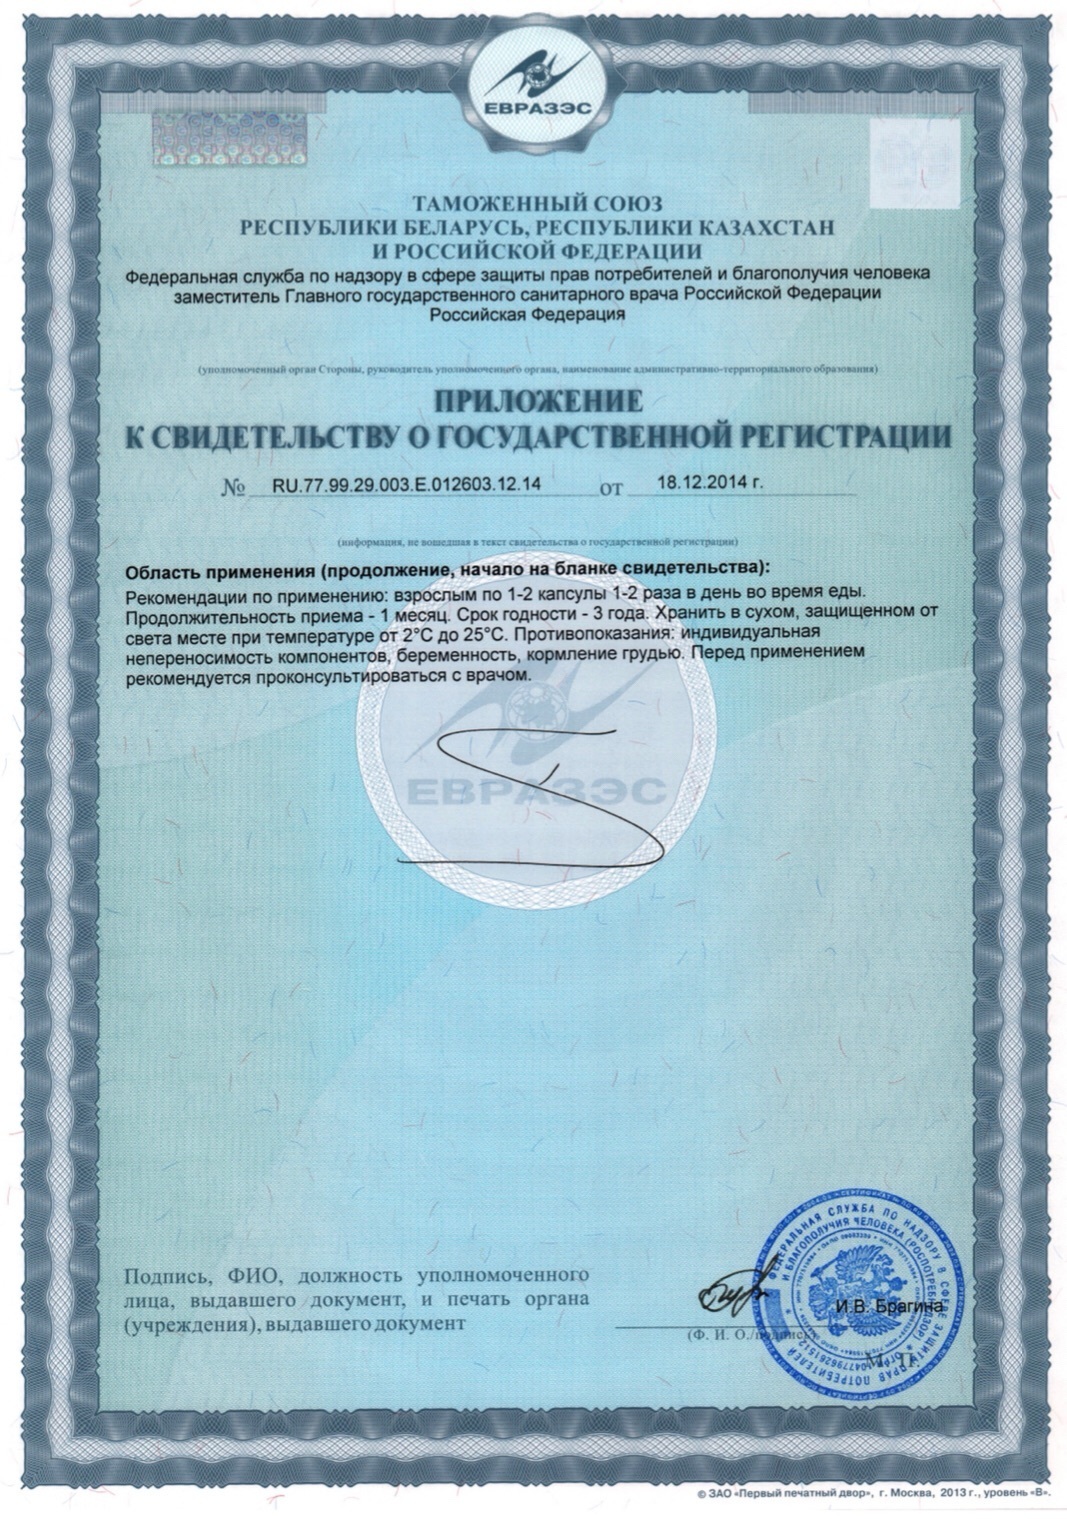 ANEMO 3 Plus® сертификат на пептидный комплекс